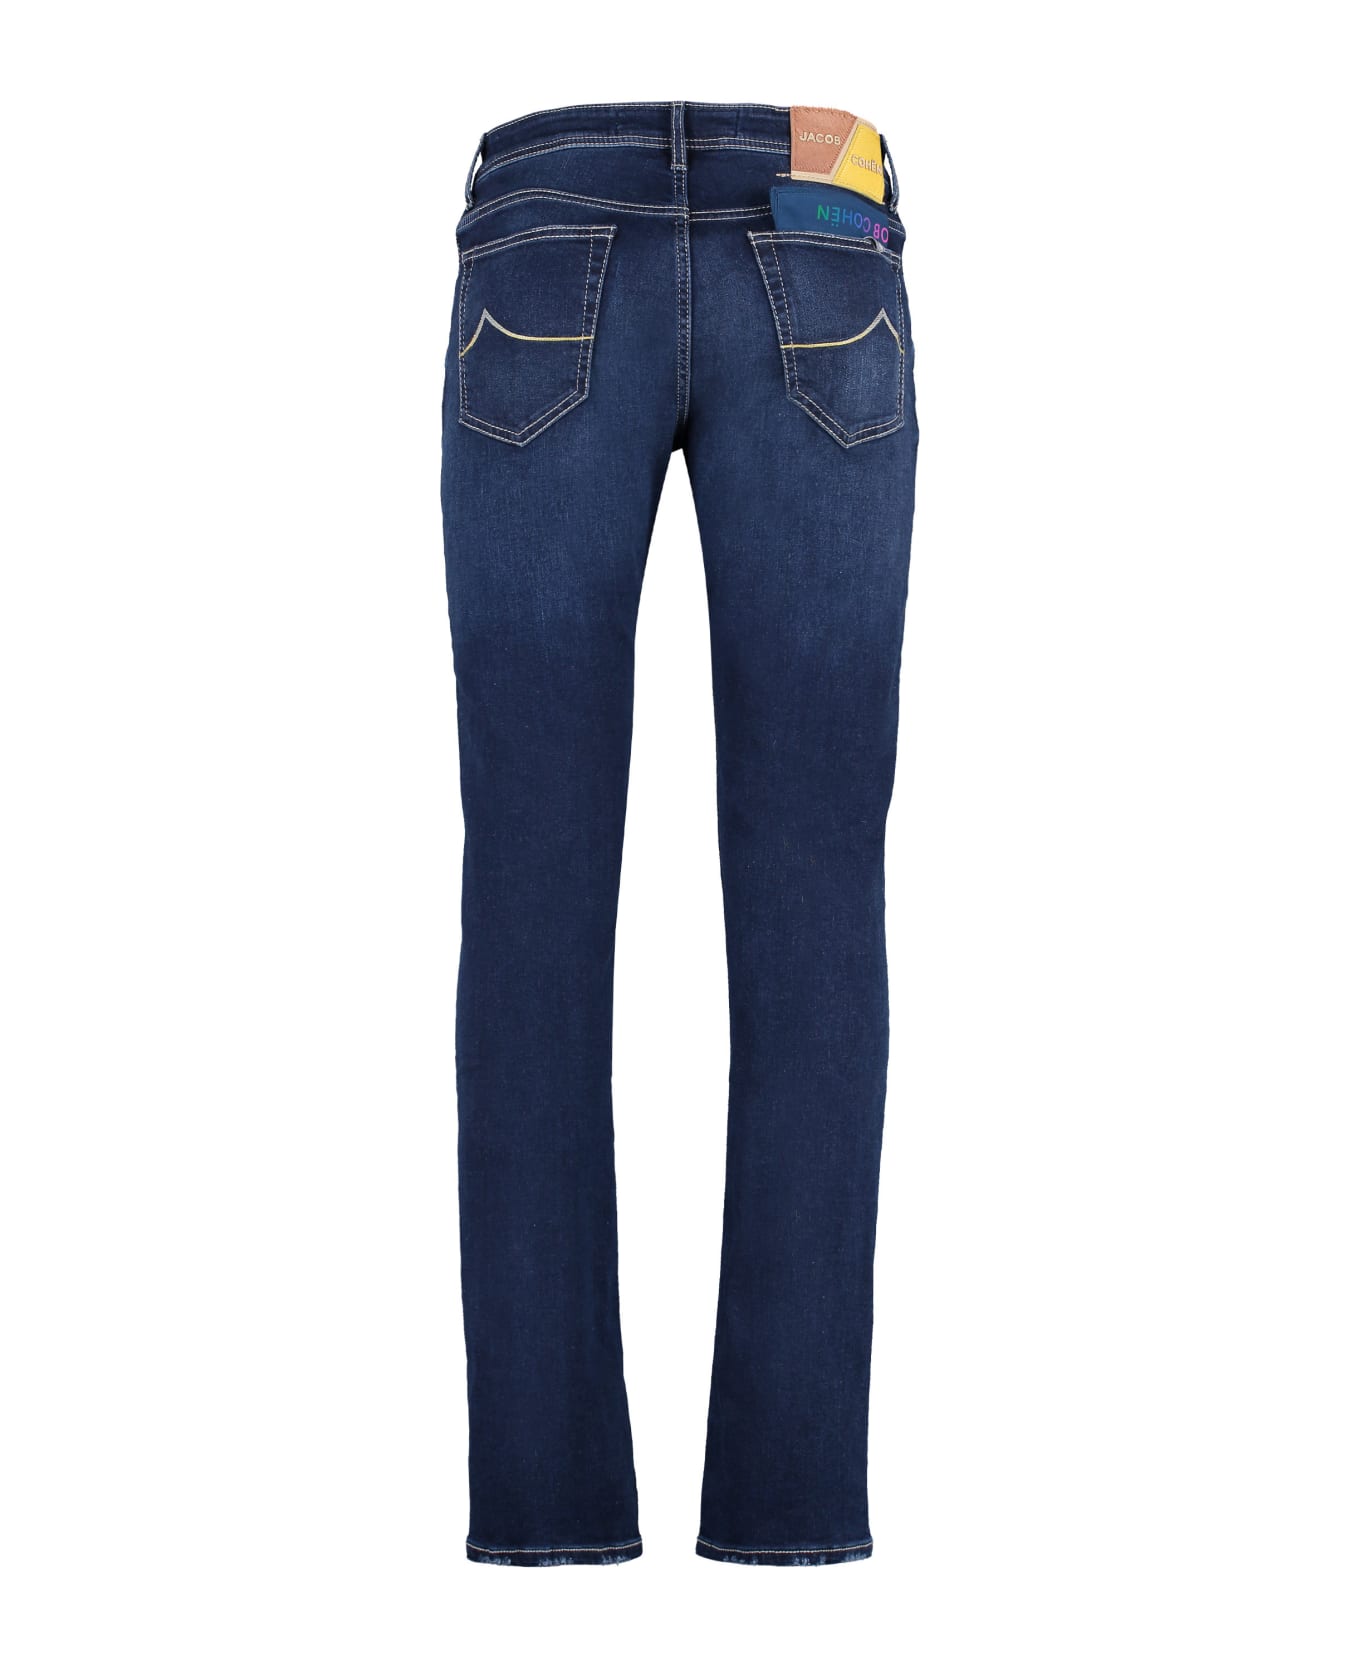 Jacob Cohen Bard Slim Fit Jeans - Denim